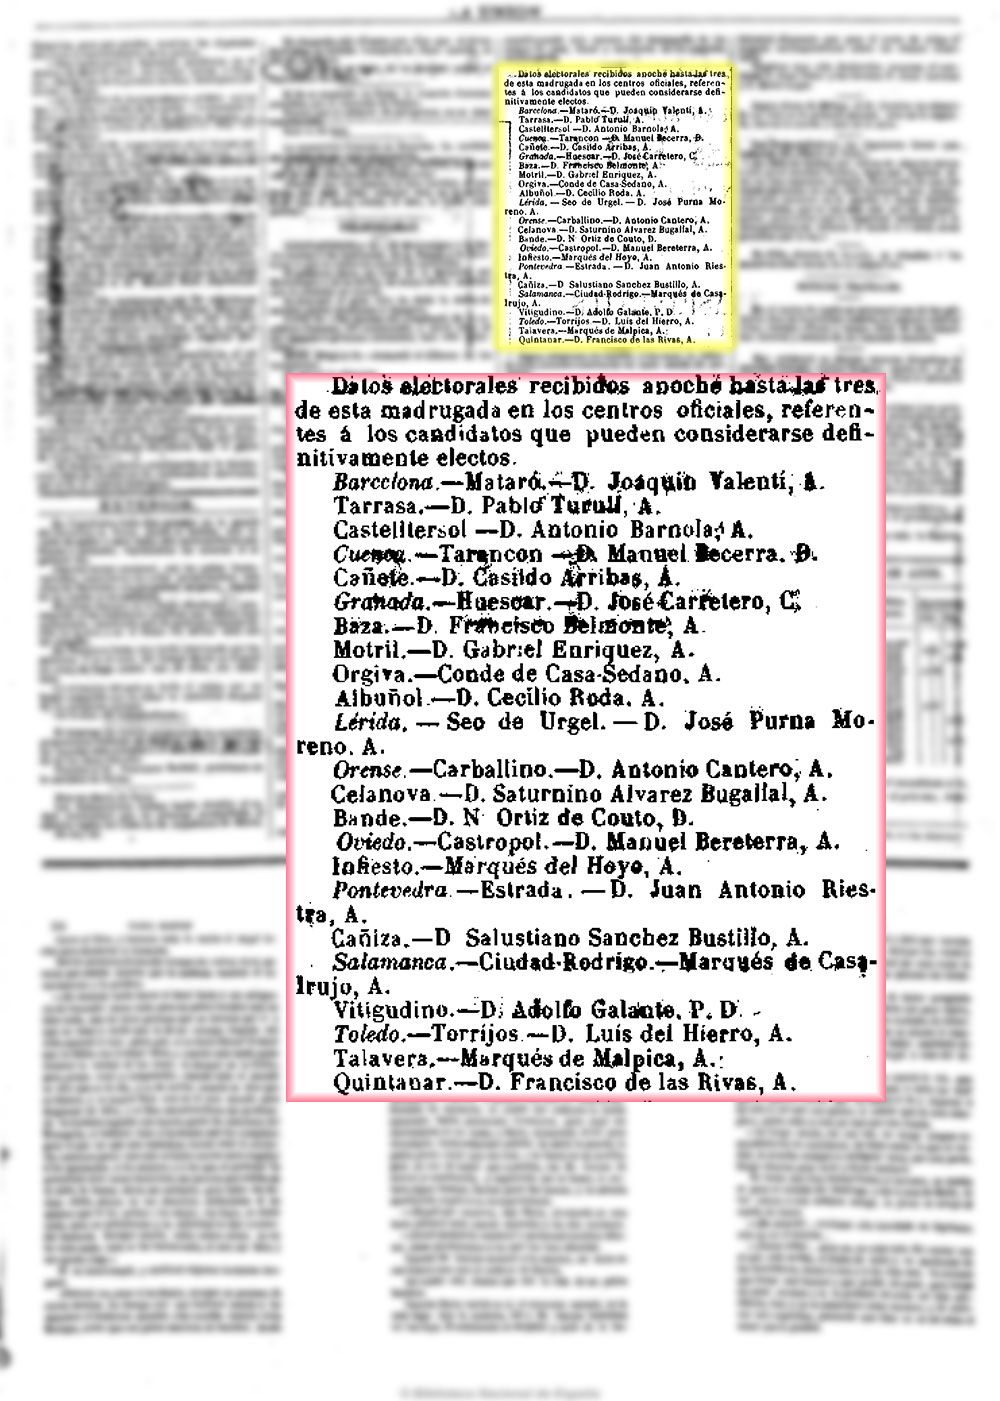 La Unión 25_4_1879, página 3, elegido diputado por Talavera de la Reina el marqués de Malpica.